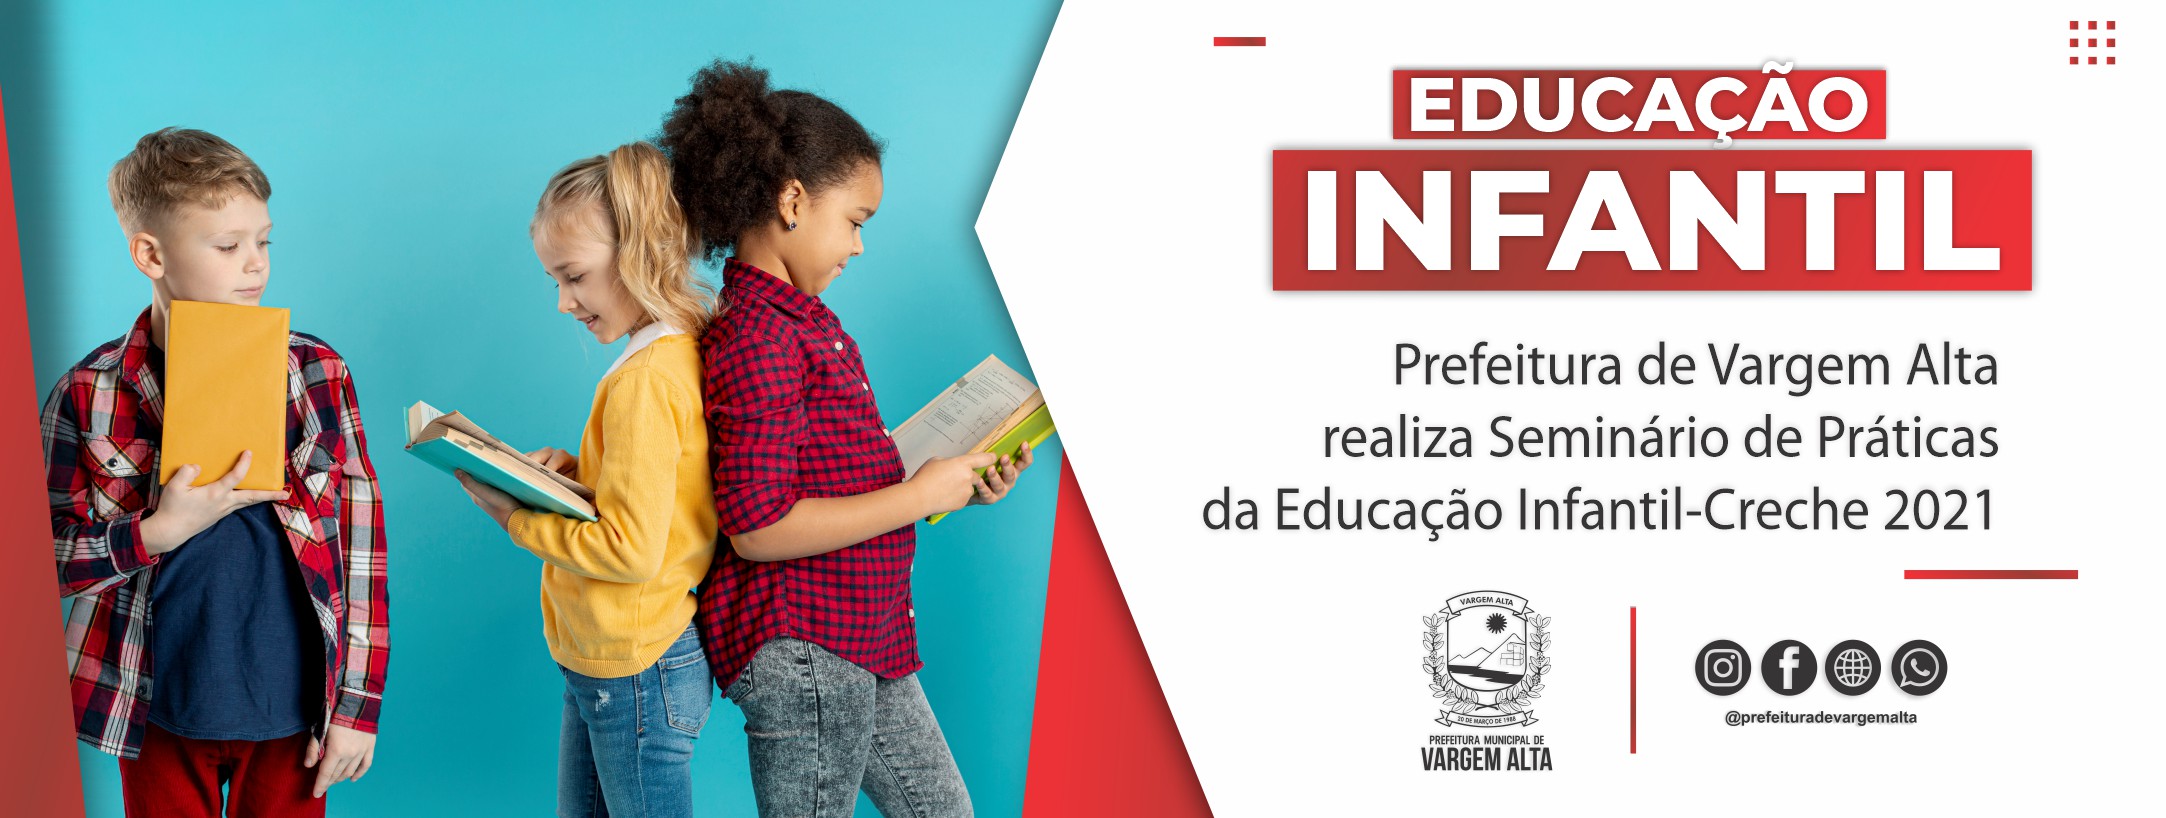 Prefeitura de Vargem Alta realiza Seminário de Práticas da Educação Infantil – Creche 2021